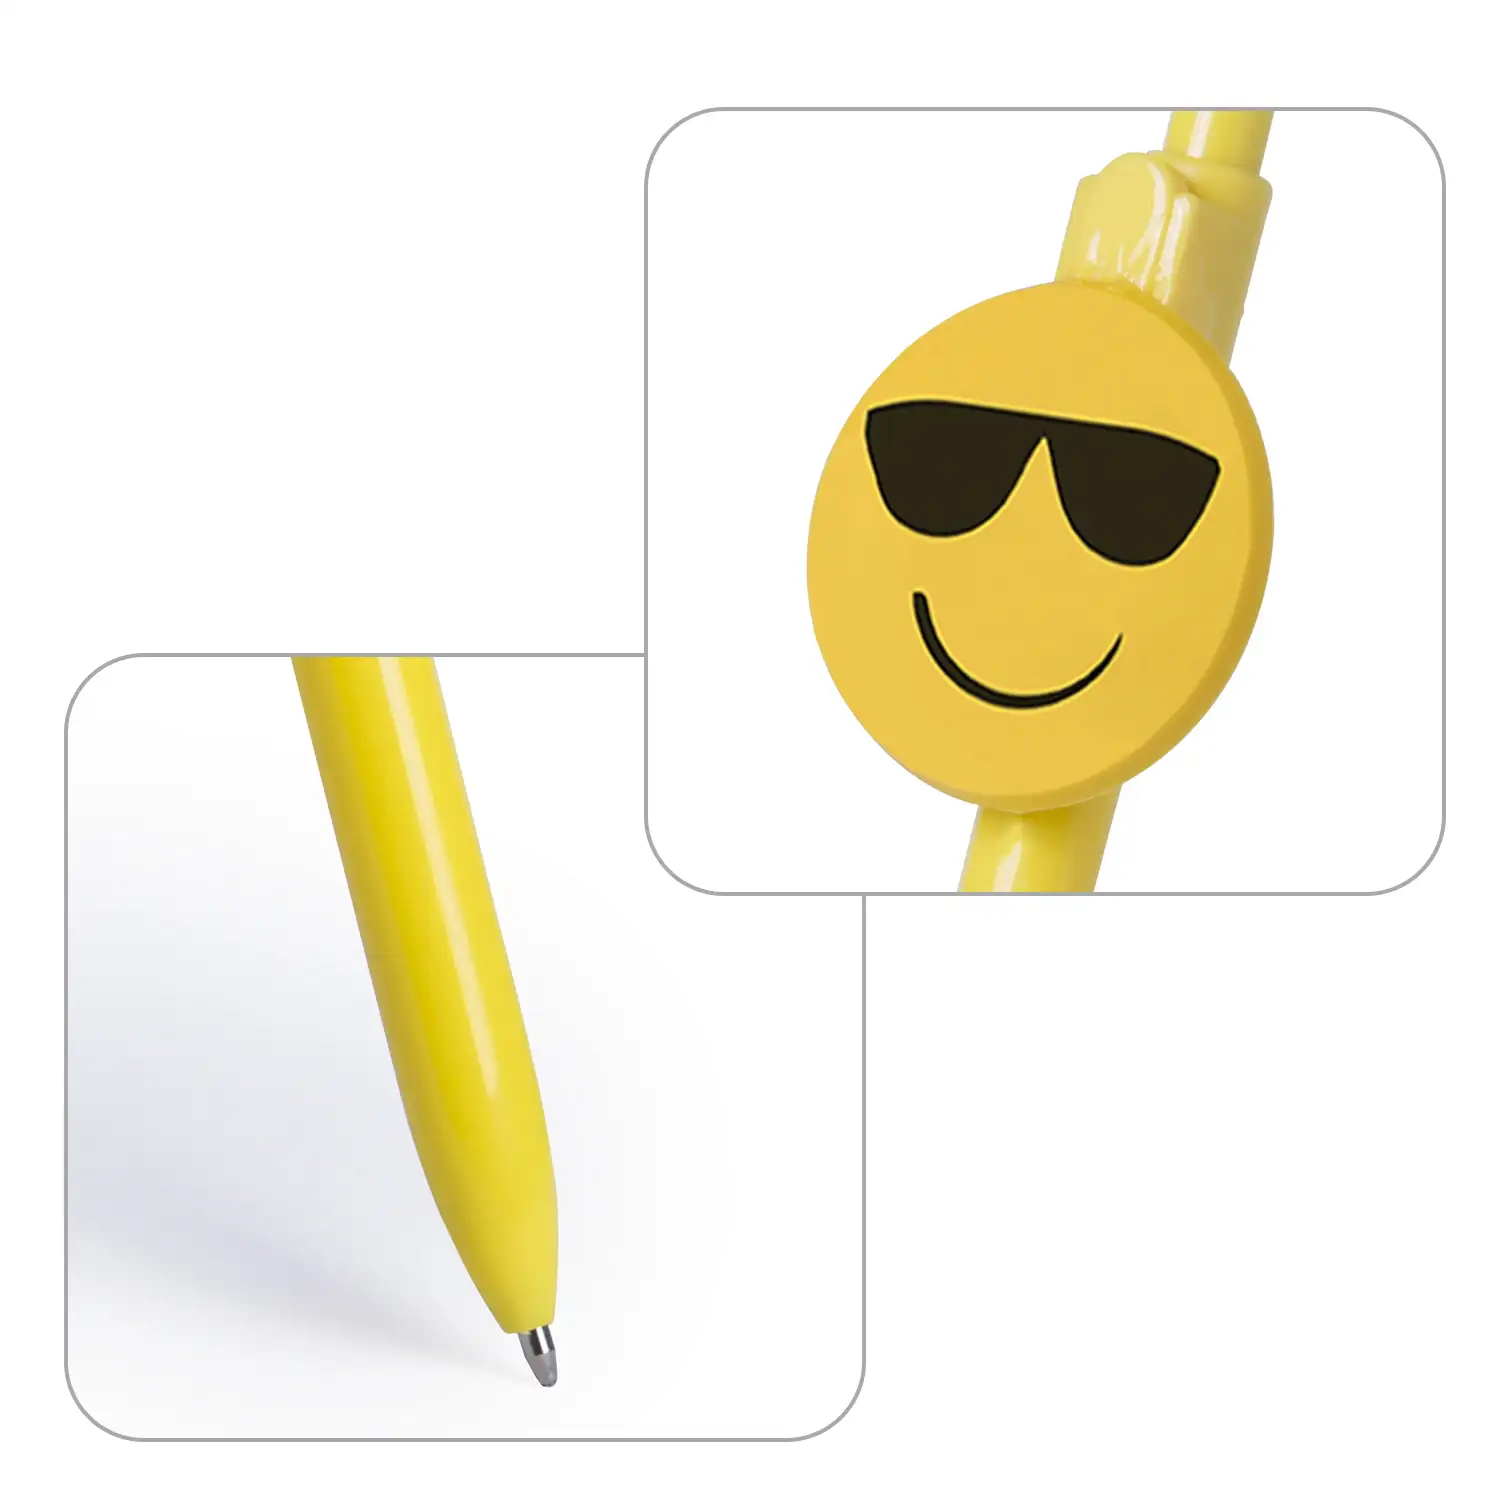 Bolígrafo Fricum diseño emoji gafas de sol. Con mecanismo pulsador y tinta azul.